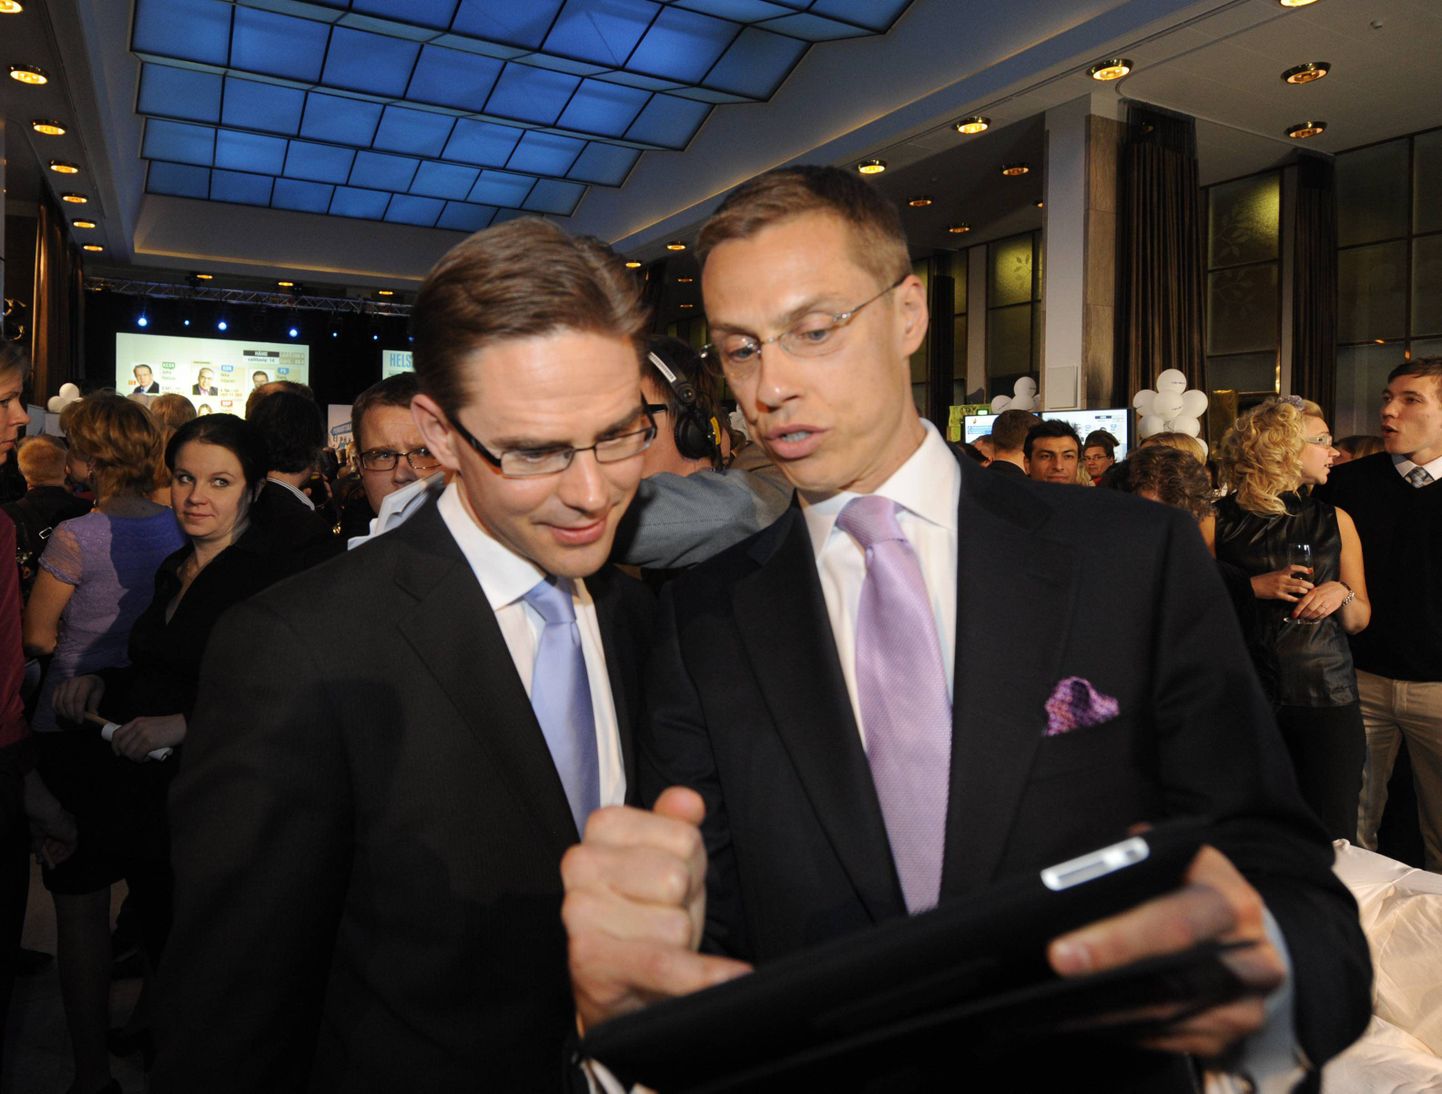 Populaarsete parlamendikandidaatide esikolmikusse mahtunud Koondpartei liikmed Jyrki Katainen ja Alexander Stubb (paremal).